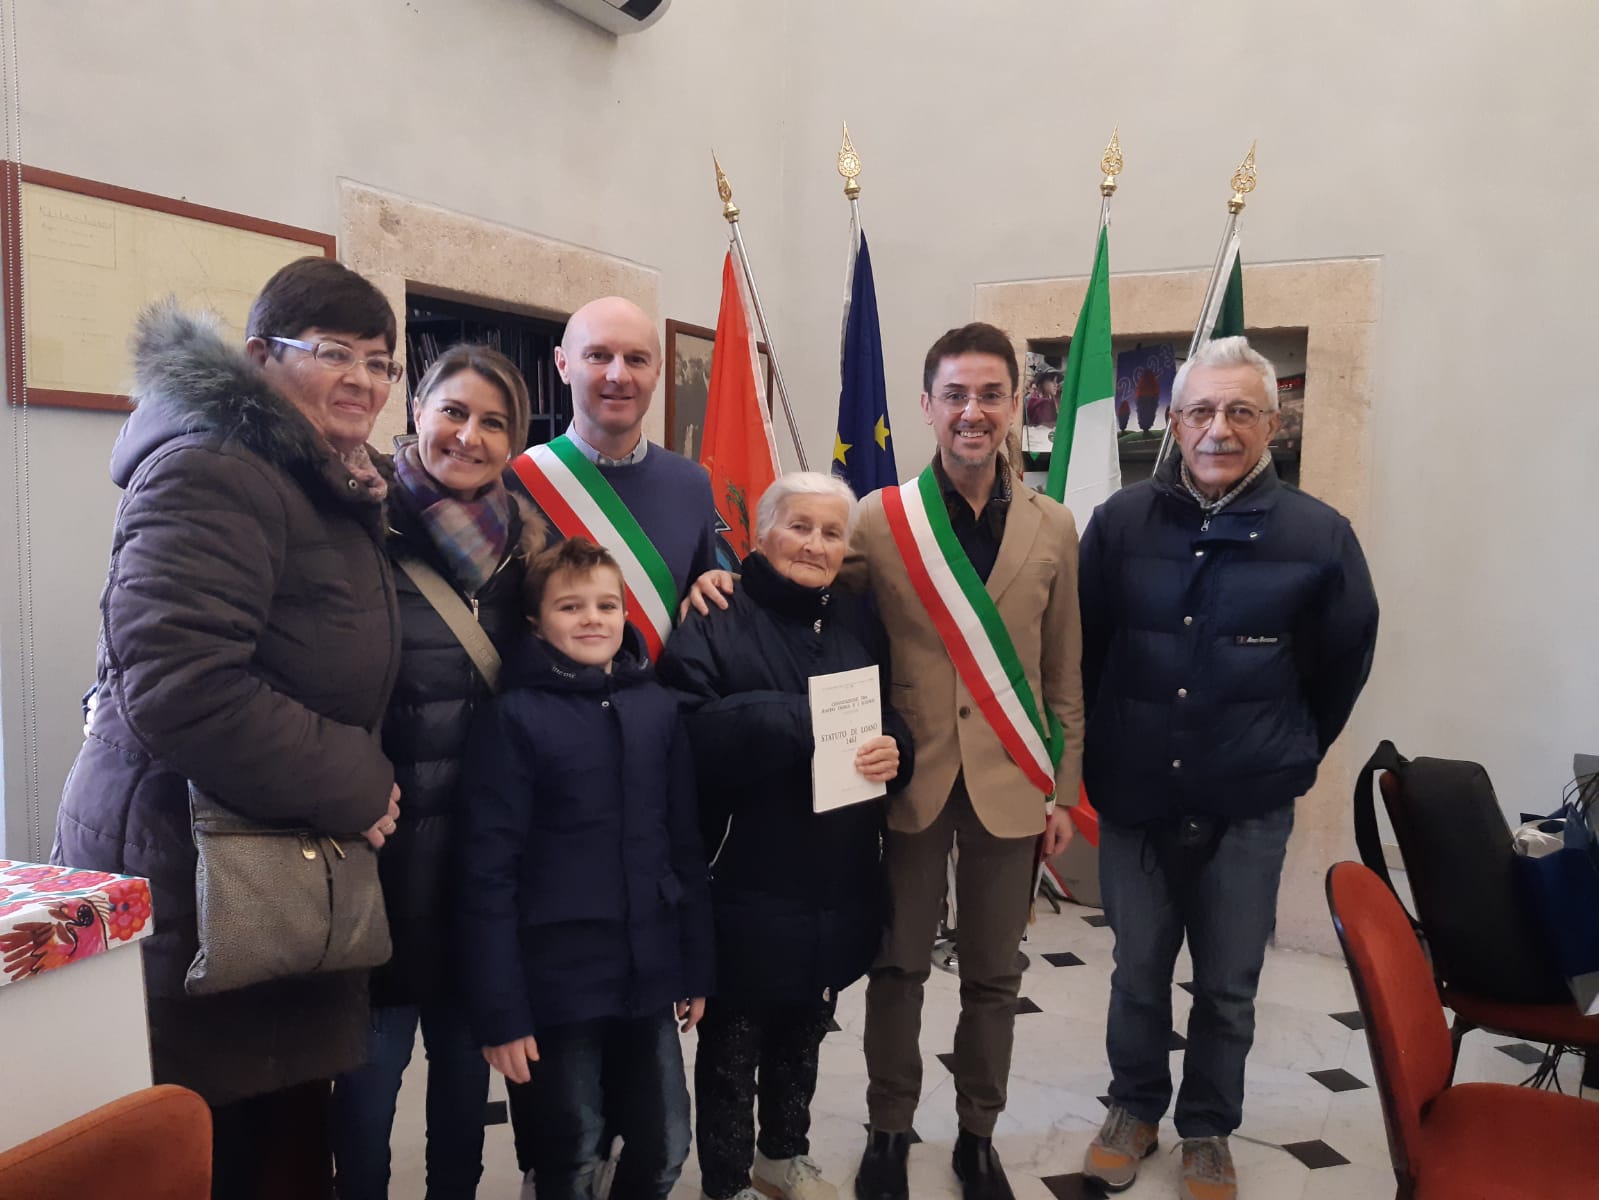 il sindaco Lettieri incontra quattro generazioni di “turisti fedeli” – Savonanews.it